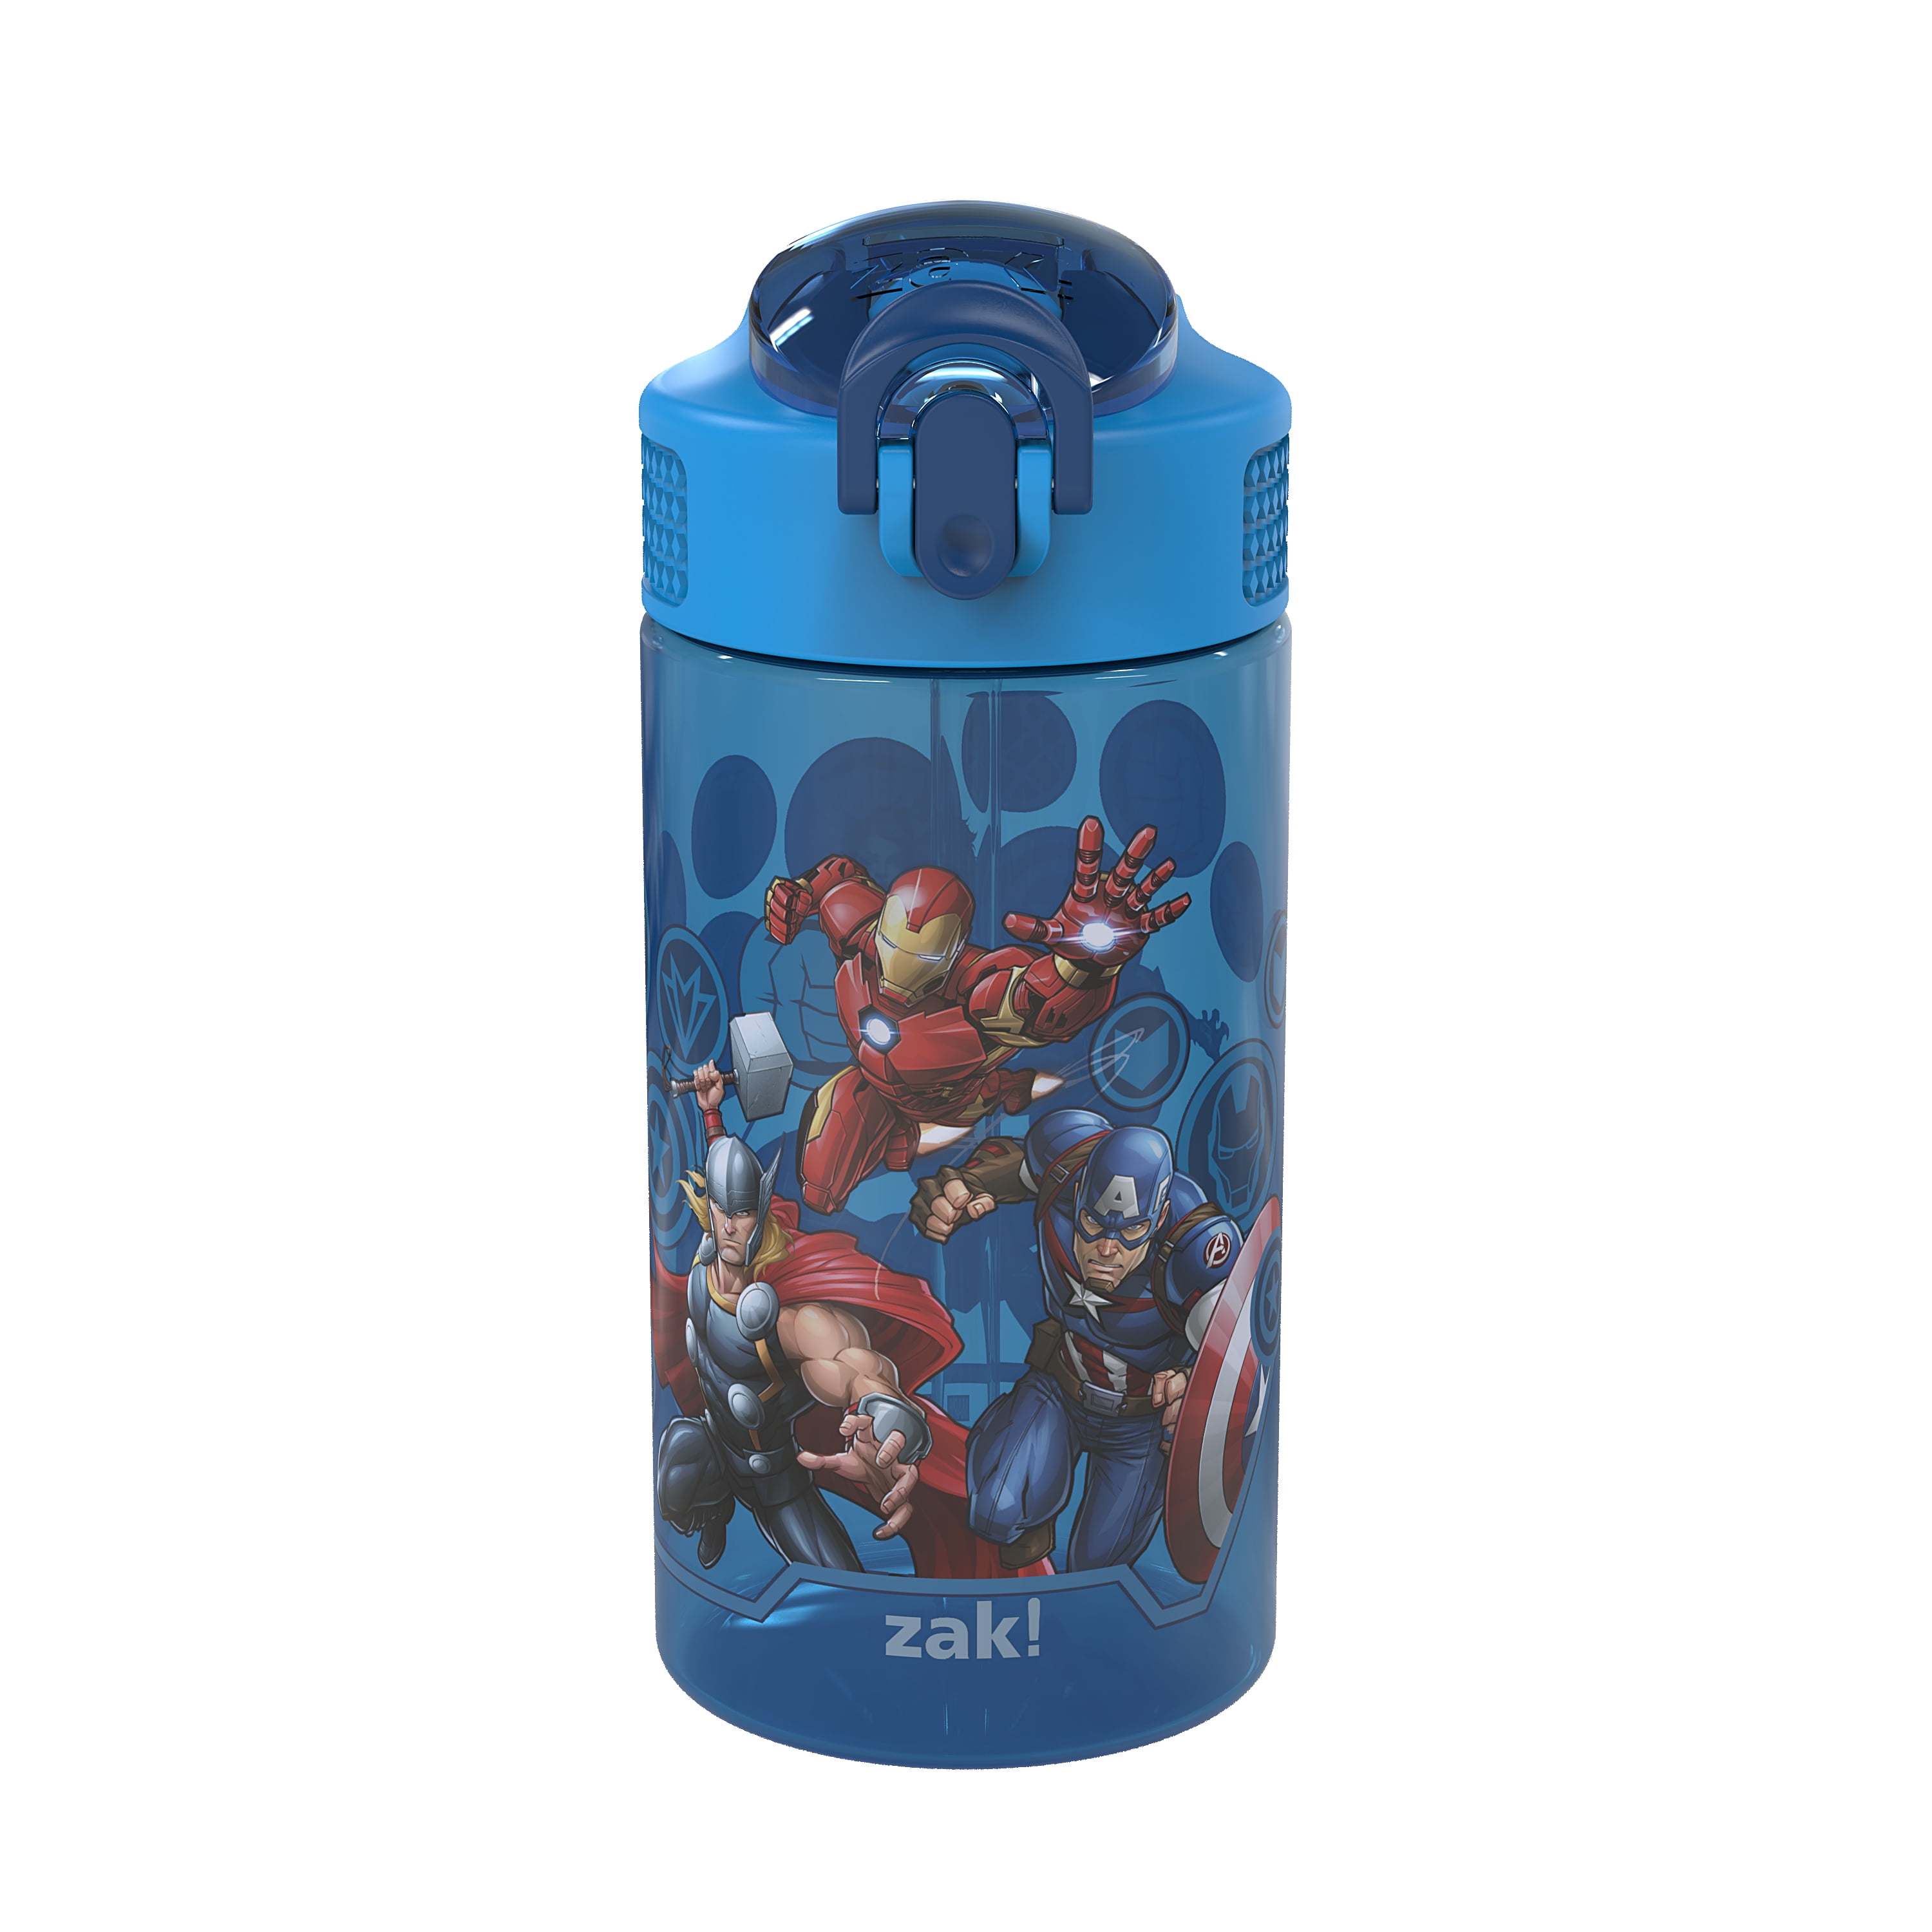 Marvel Comic Avengers Superheroes UV Print 22 Oz. Stainless Steel Water  Bottle